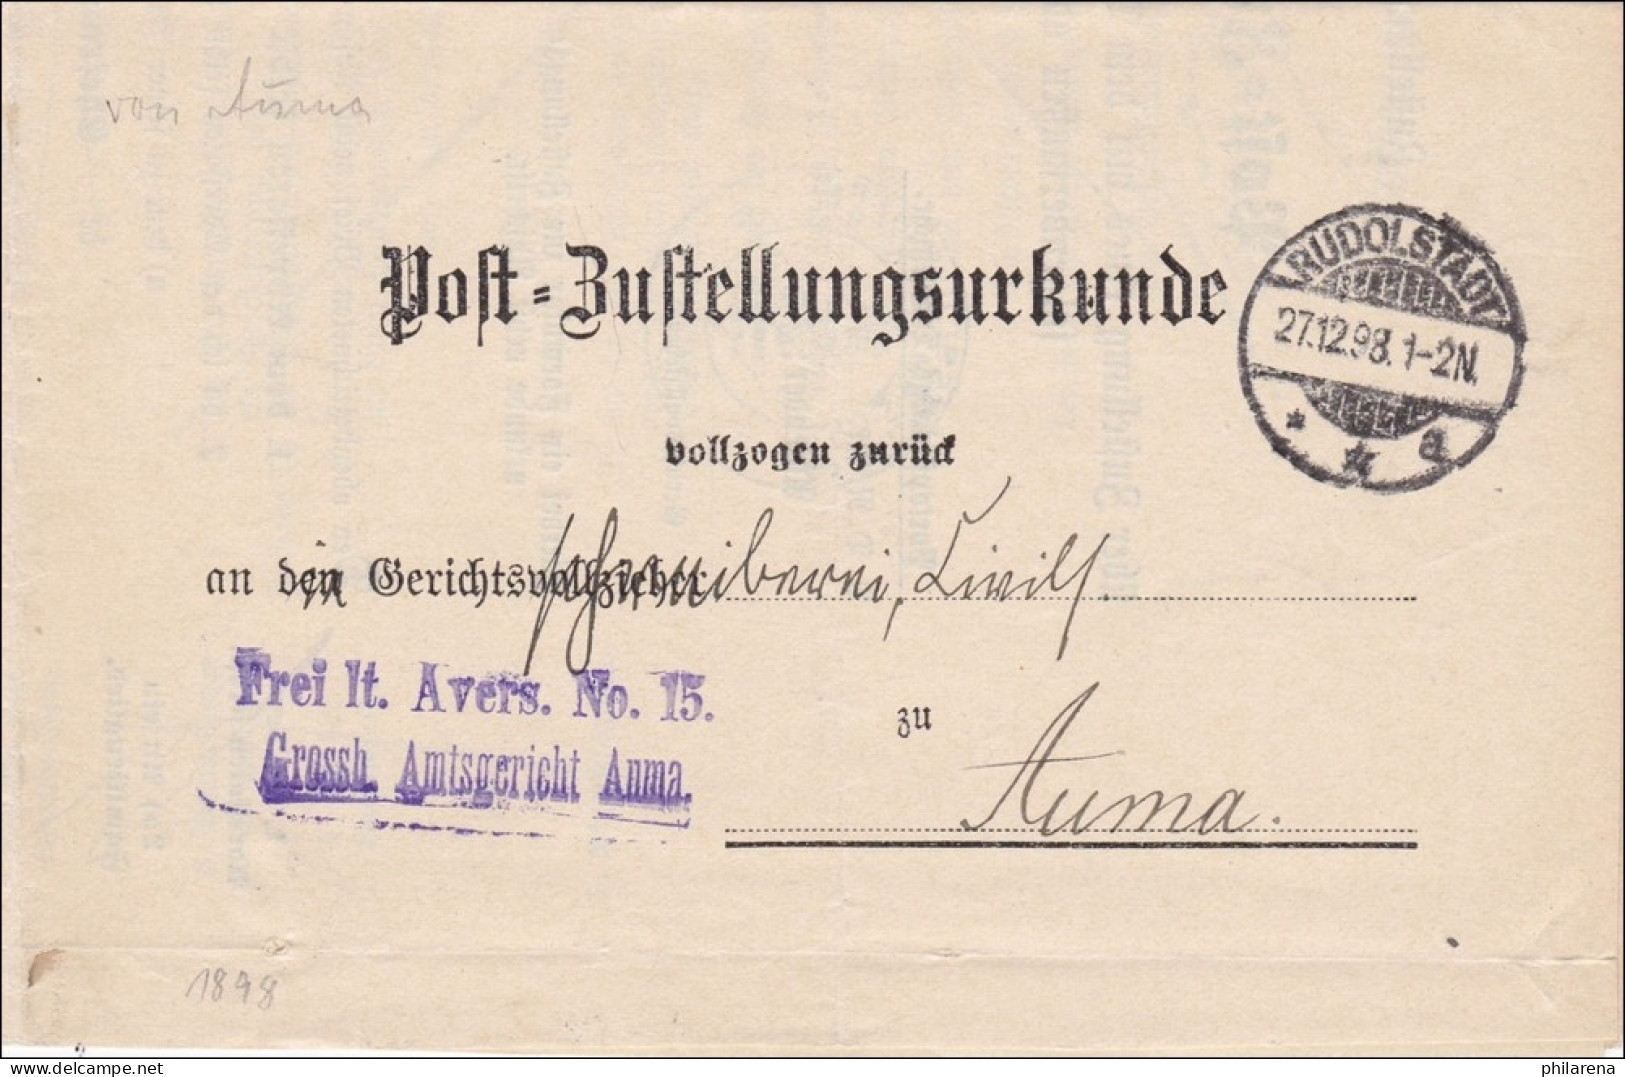 Postzustellurkunde 1893 Von Rudolstadt Nach Auma - Lettres & Documents